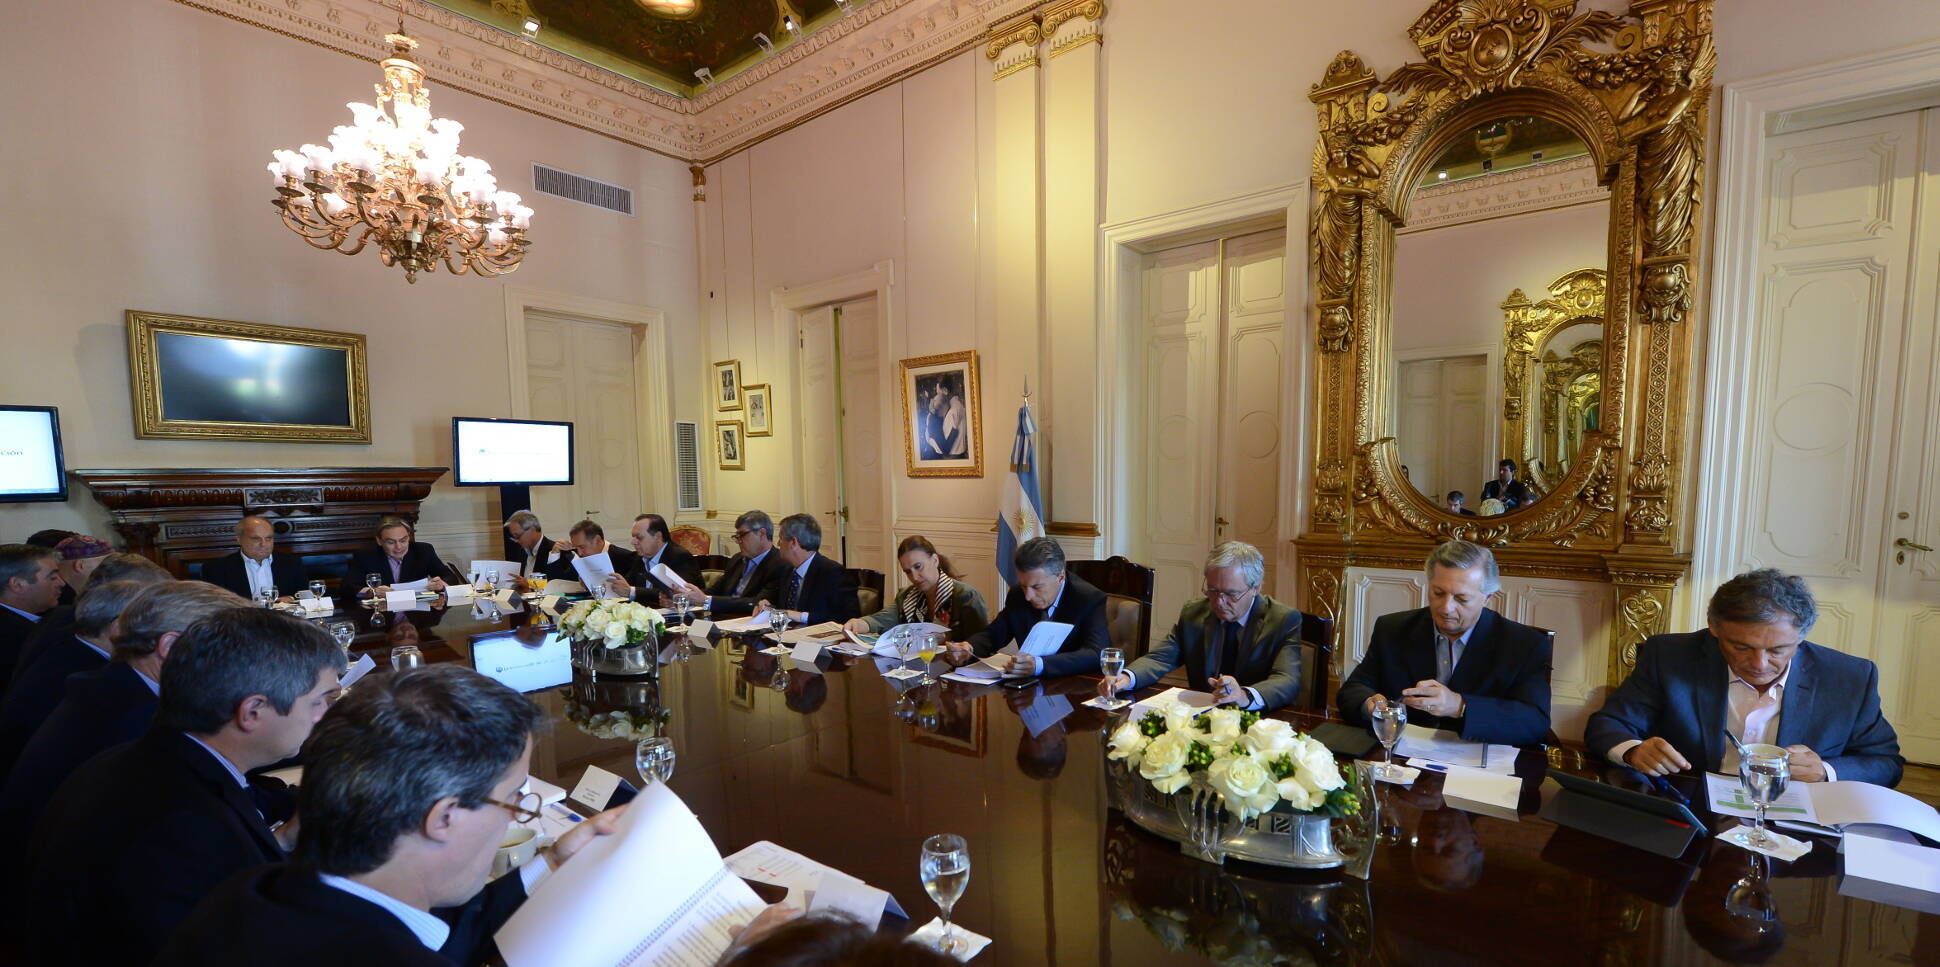 El Presidente encabeza una nueva reunión de Gabinete en el Salón Eva Perón de la Casa Rosada.